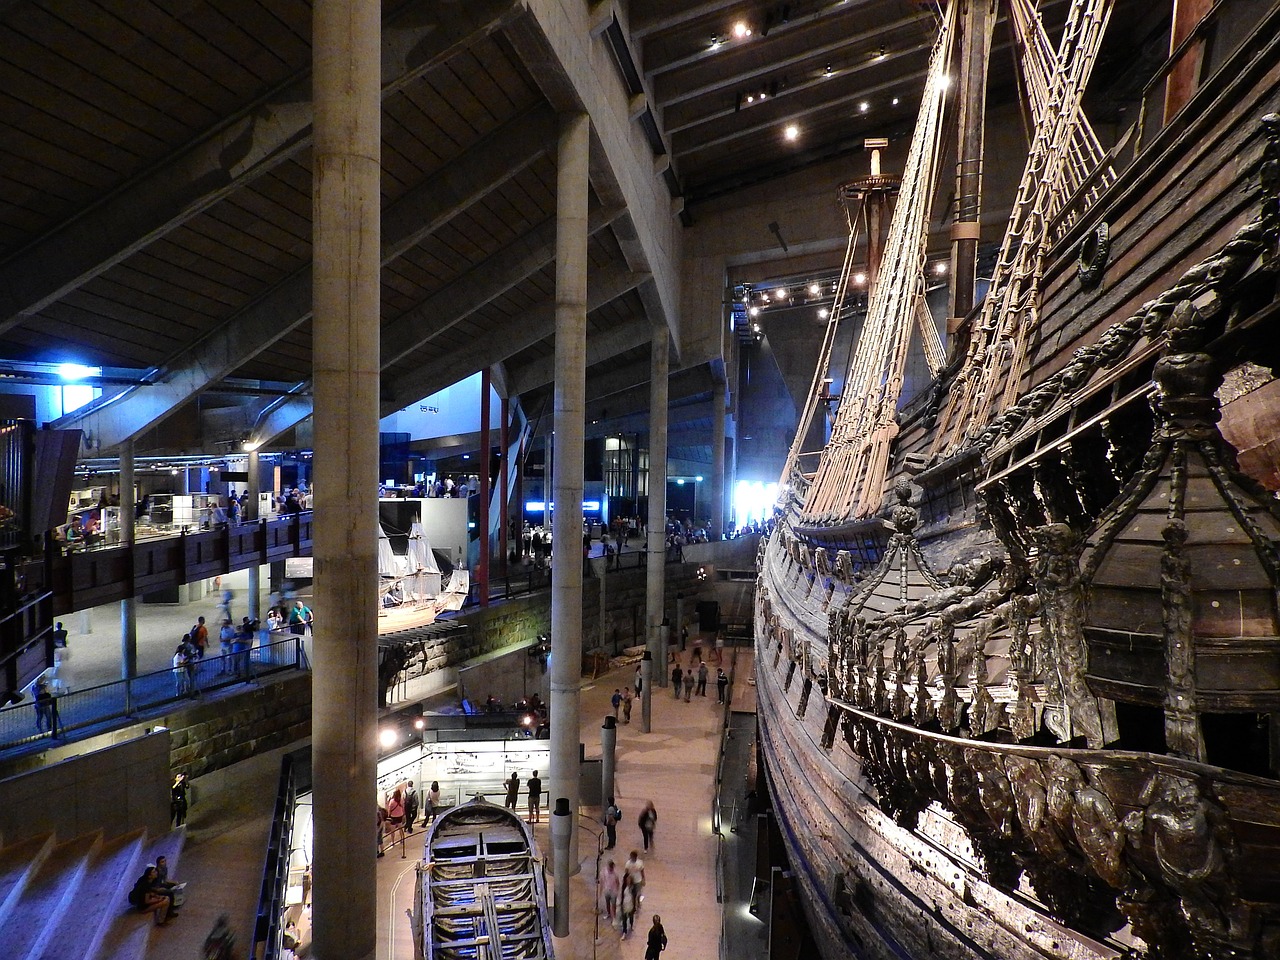 Le musée Vasa à Stockholm